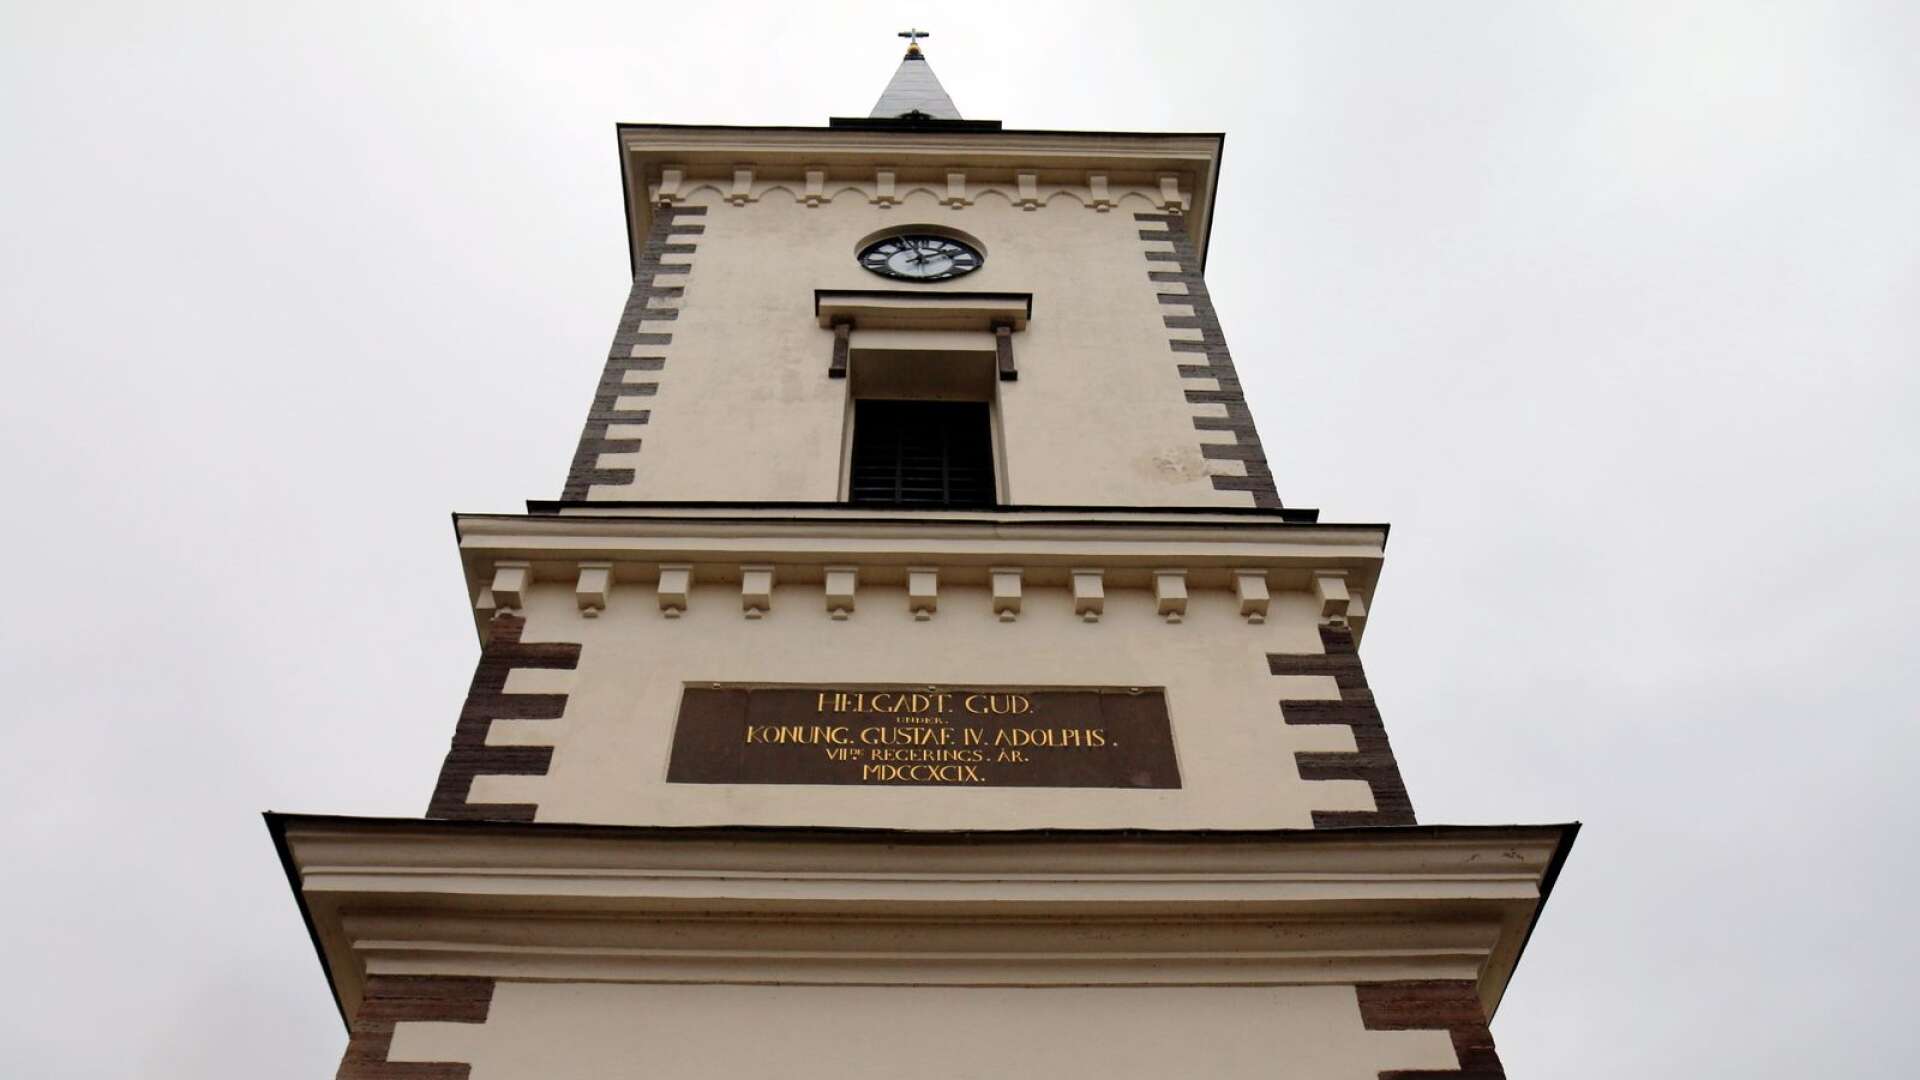 Hjo kyrkas kyrkklocka kommer ljuda tillsammans med många andra kyrkklockor i Sverige den 31 december.